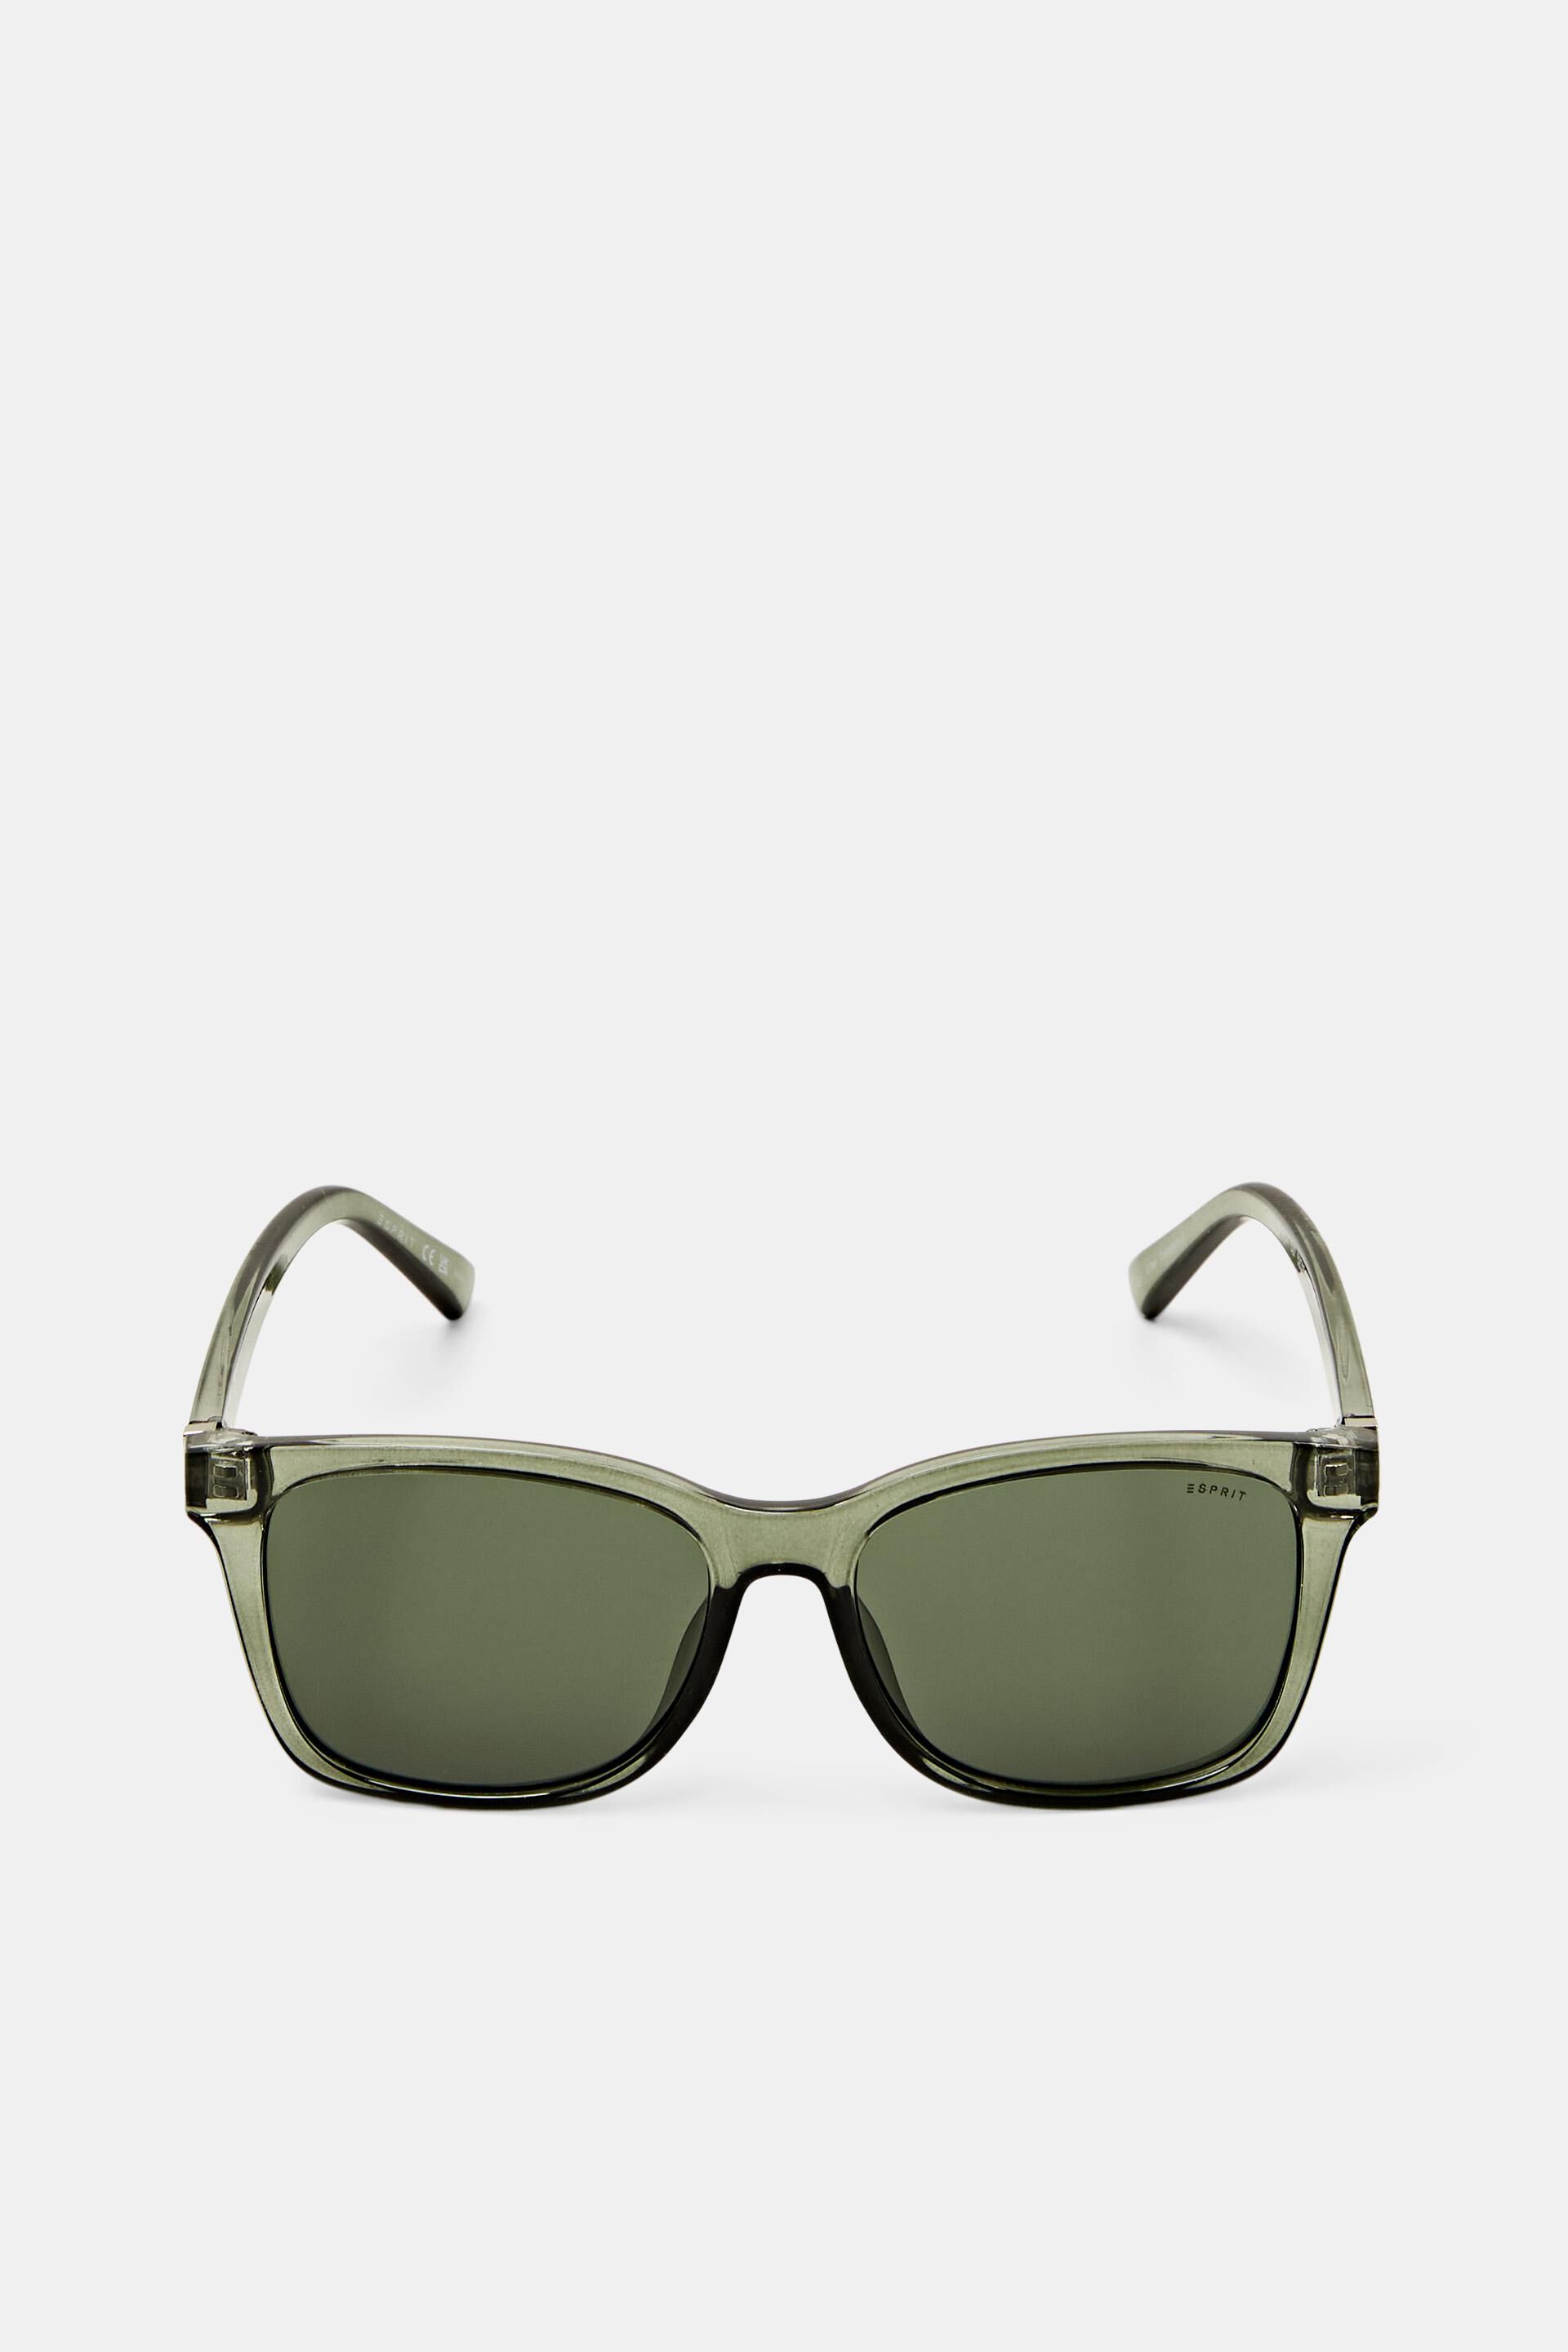 Esprit Sale Angular sunglasses